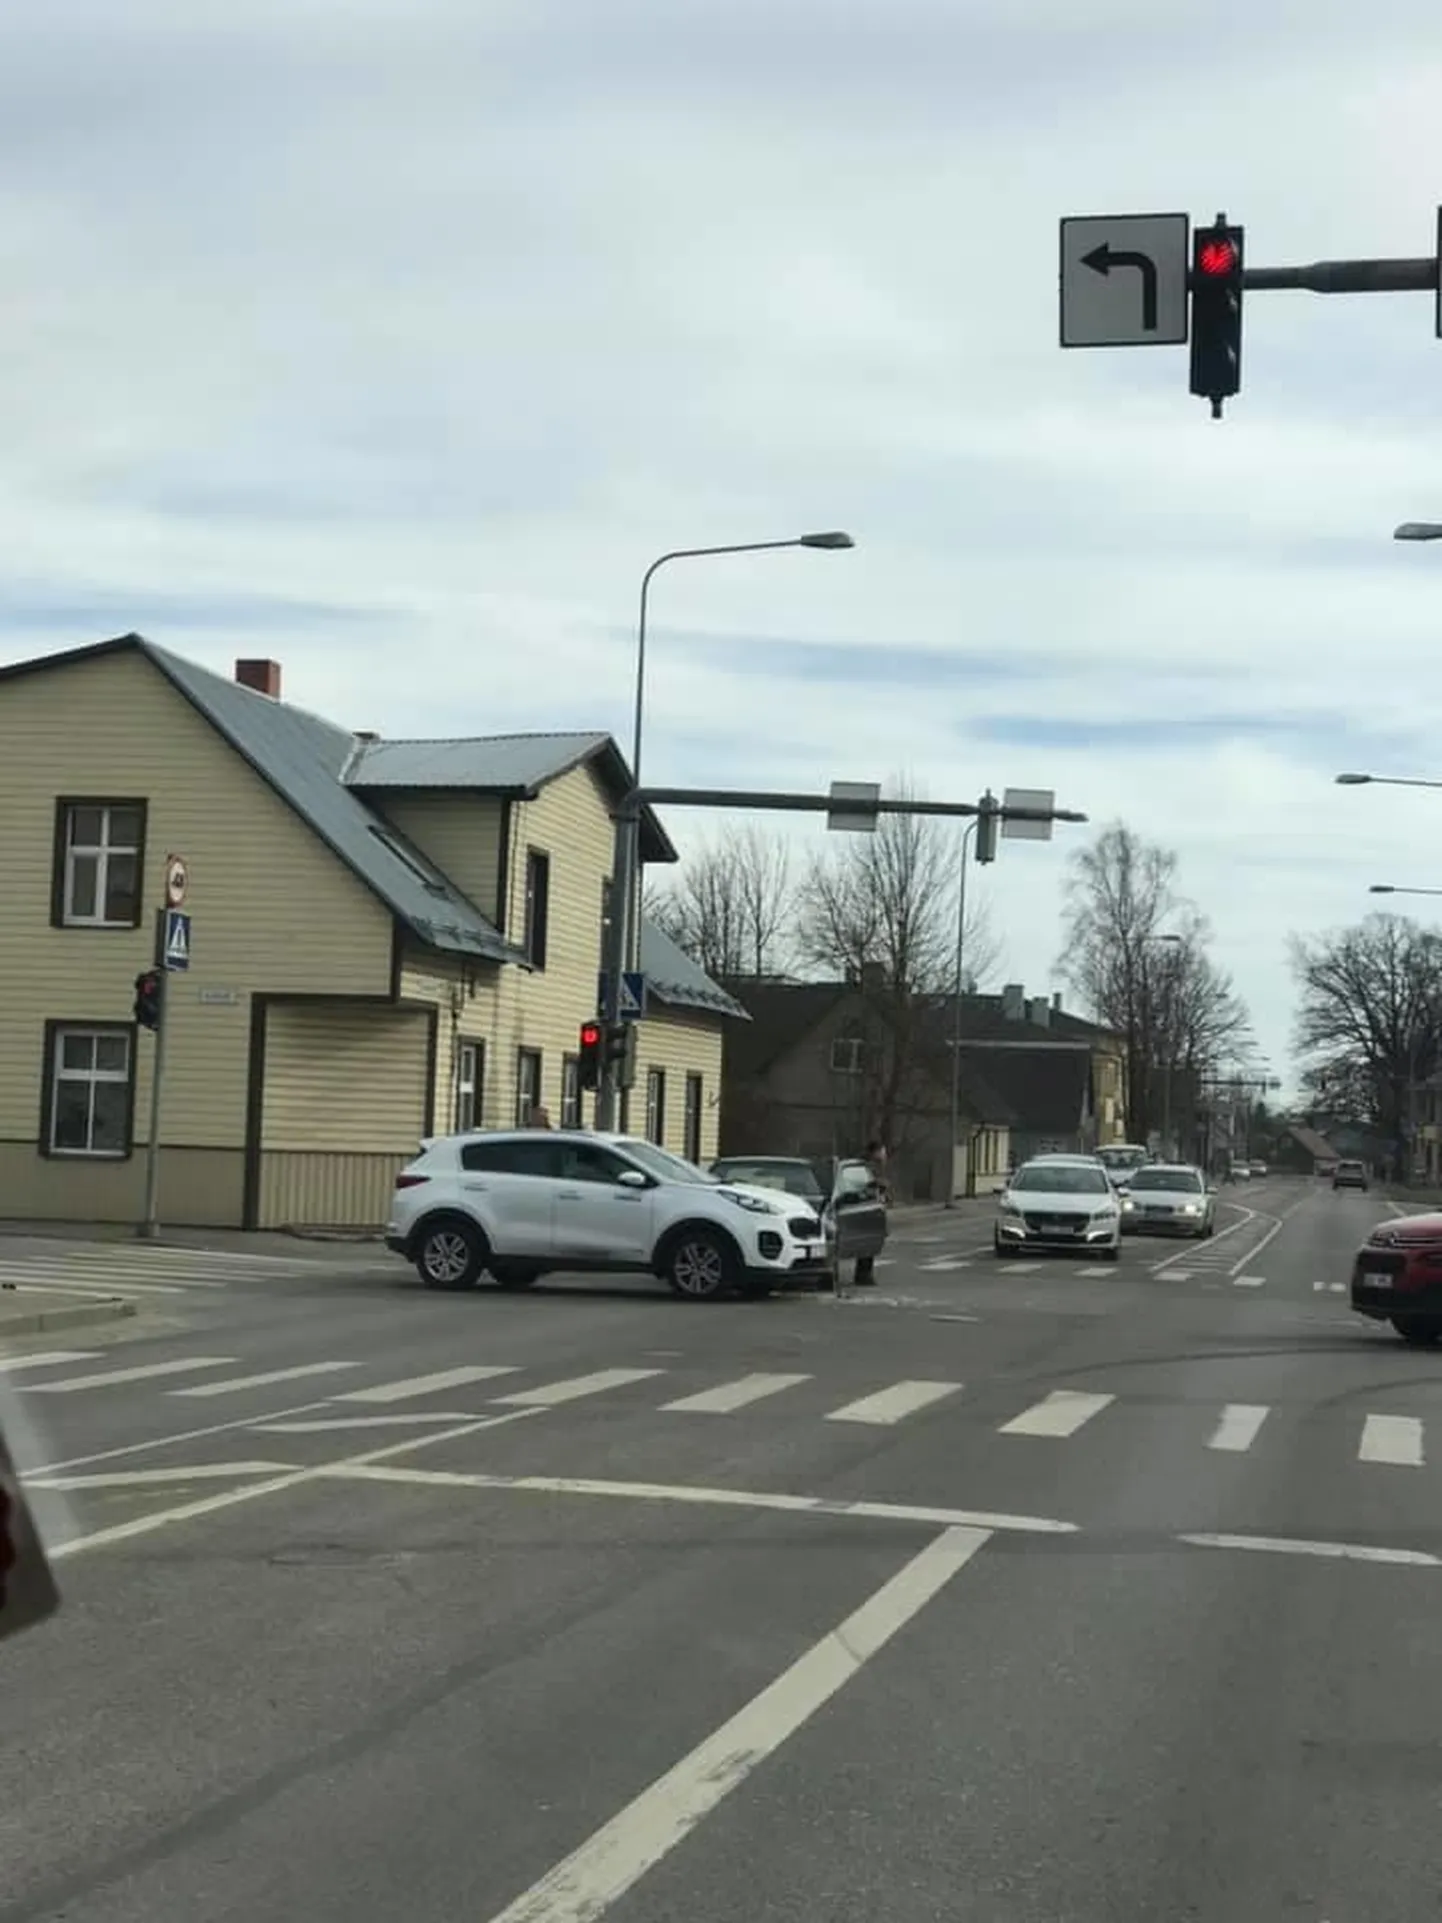 Tallinna maanteel sõitnud Volkswageni juht eiras punast tuld ja sõitis külje pealt sisse Kiale.